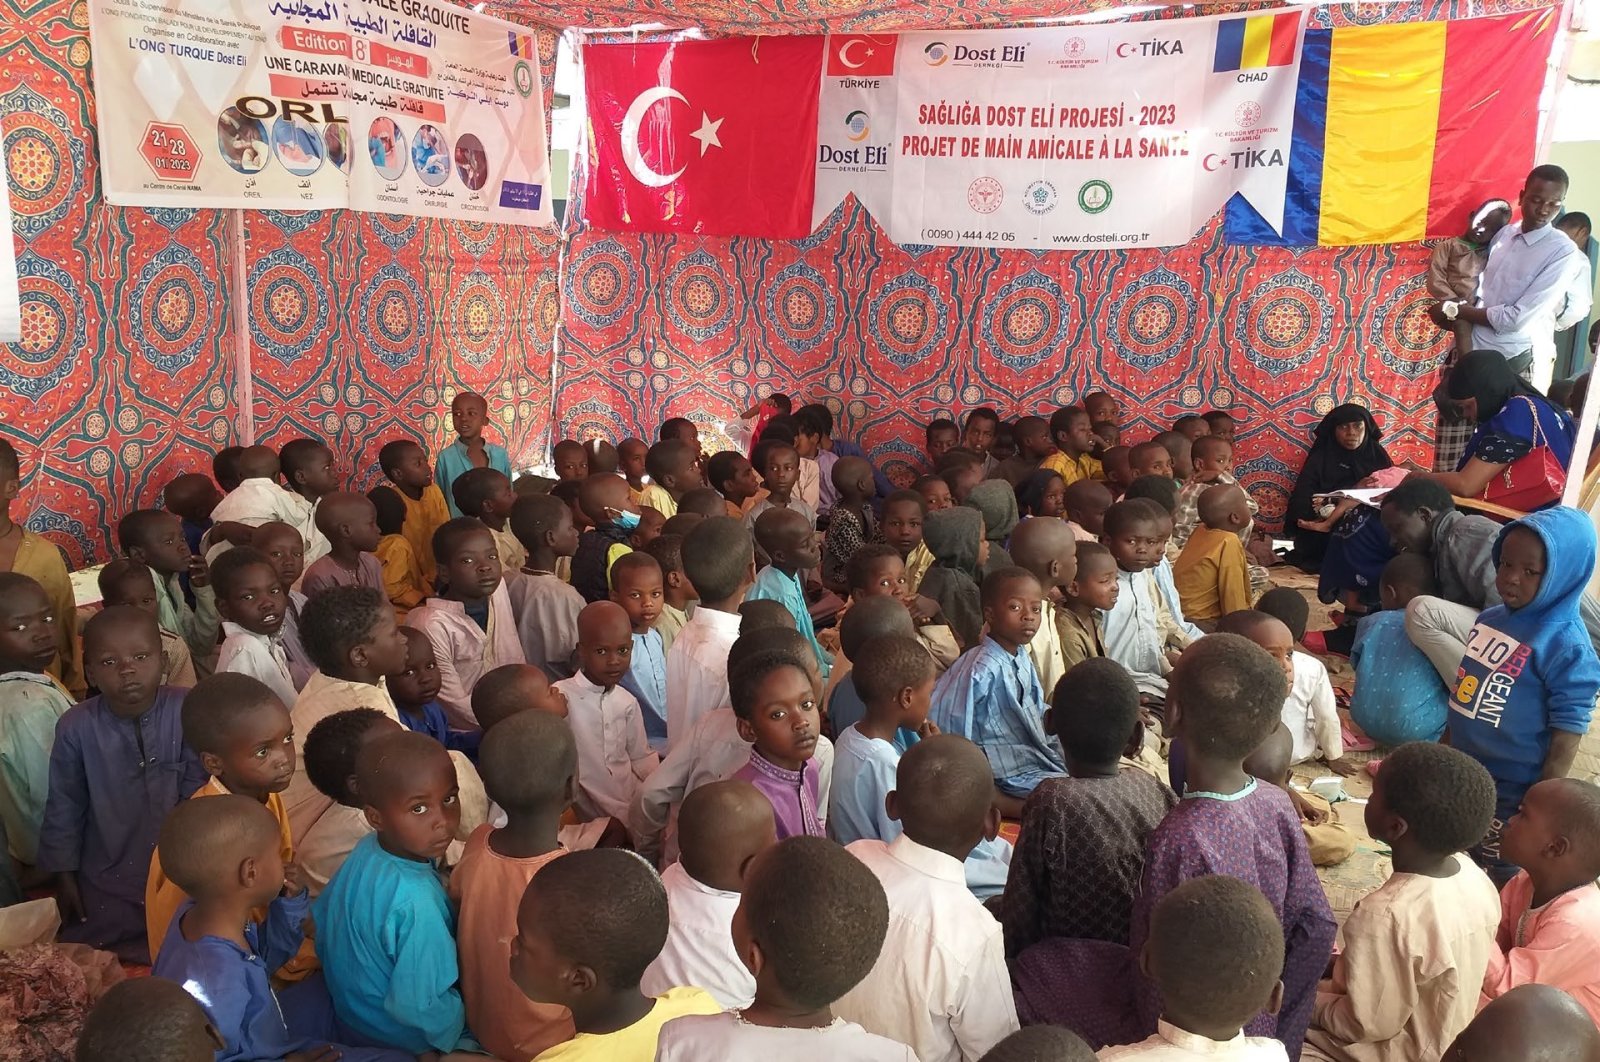 TIKA Türkiye memberikan dukungan kesehatan bagi warga Chad